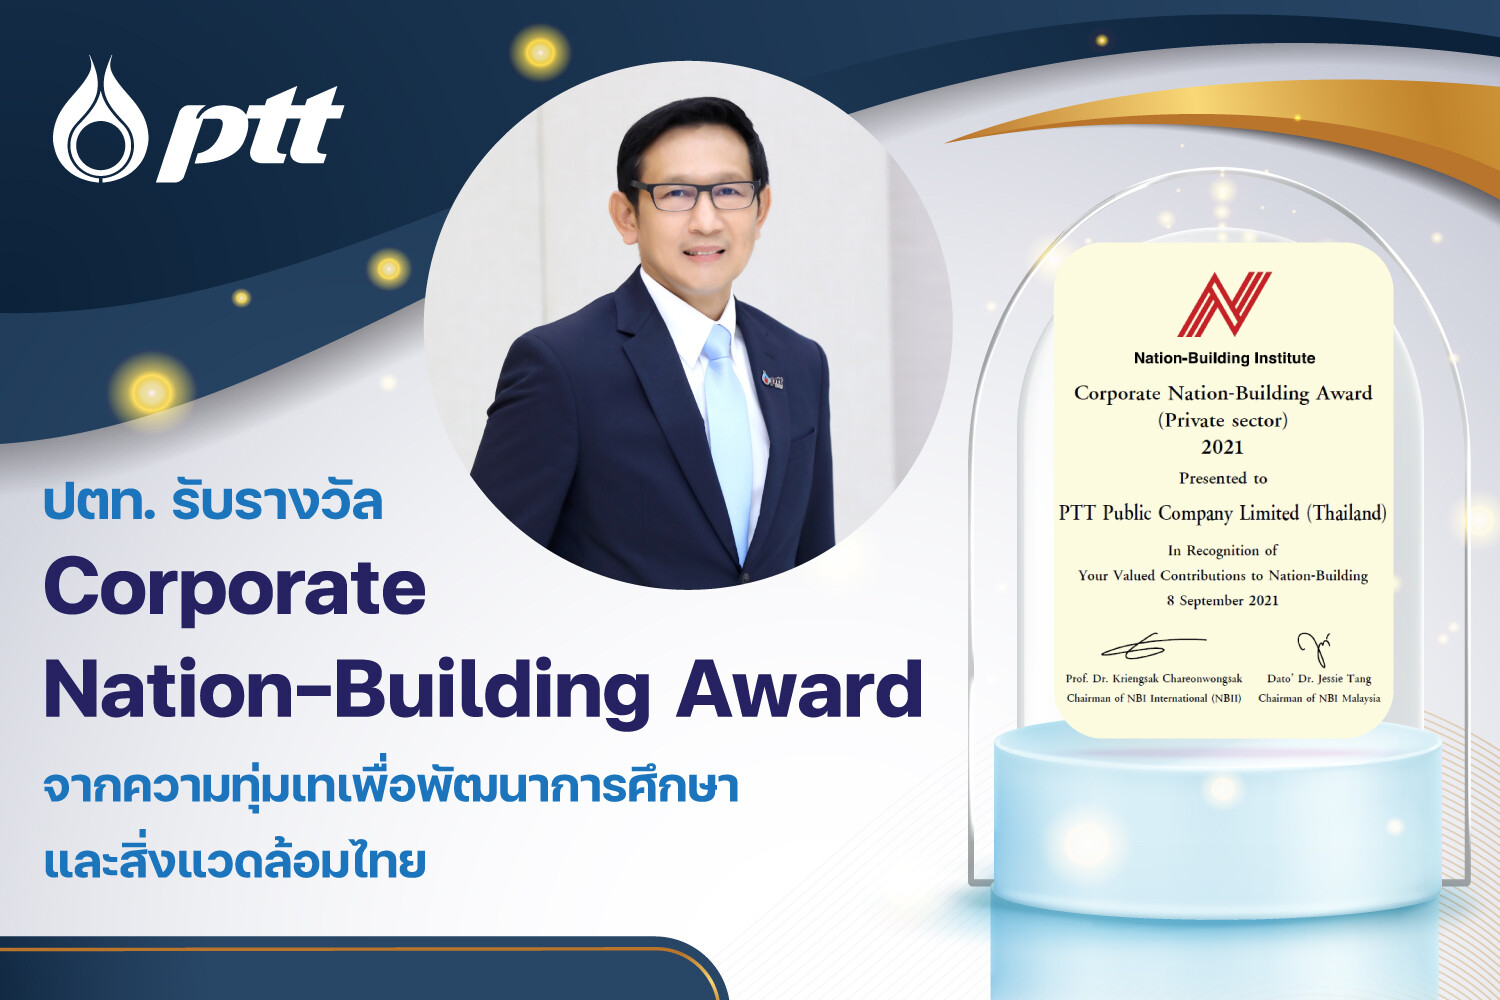 ปตท. รับรางวัลระดับสากล "Corporate Nation-Building Award" จากความทุ่มเทเพื่อพัฒนาการศึกษาและสิ่งแวดล้อมไทย